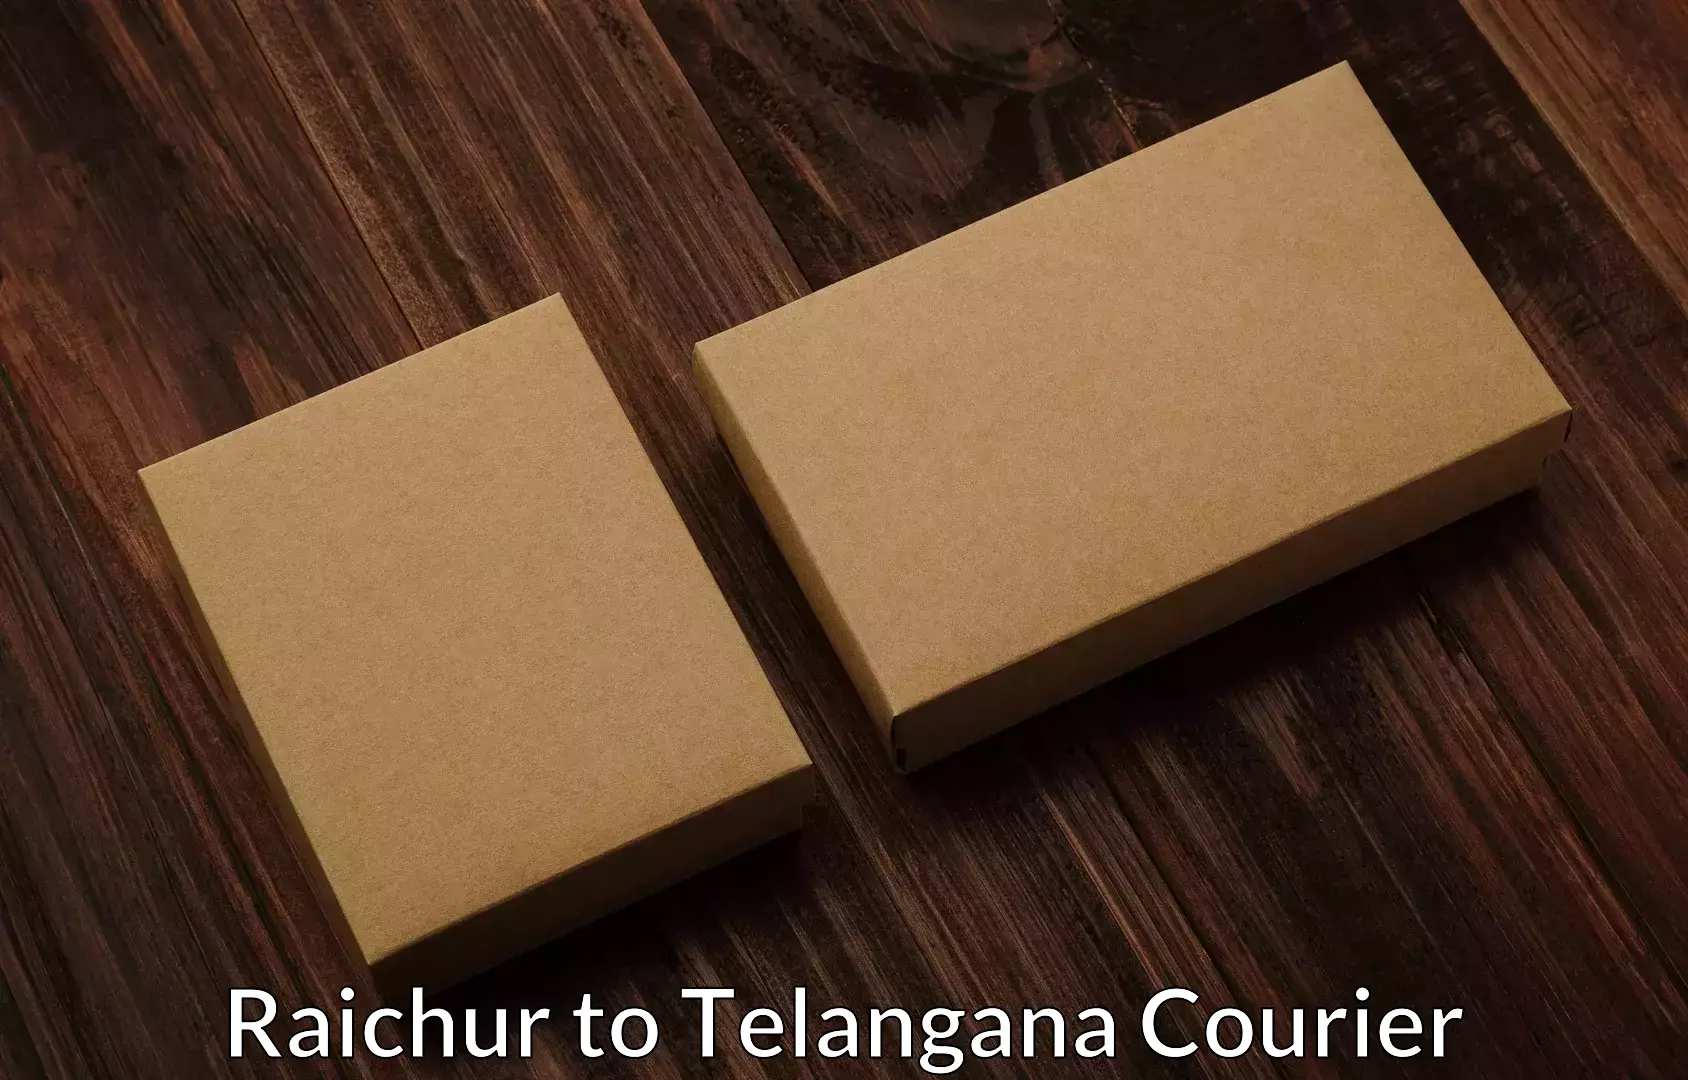 Moving and handling services Raichur to Telangana